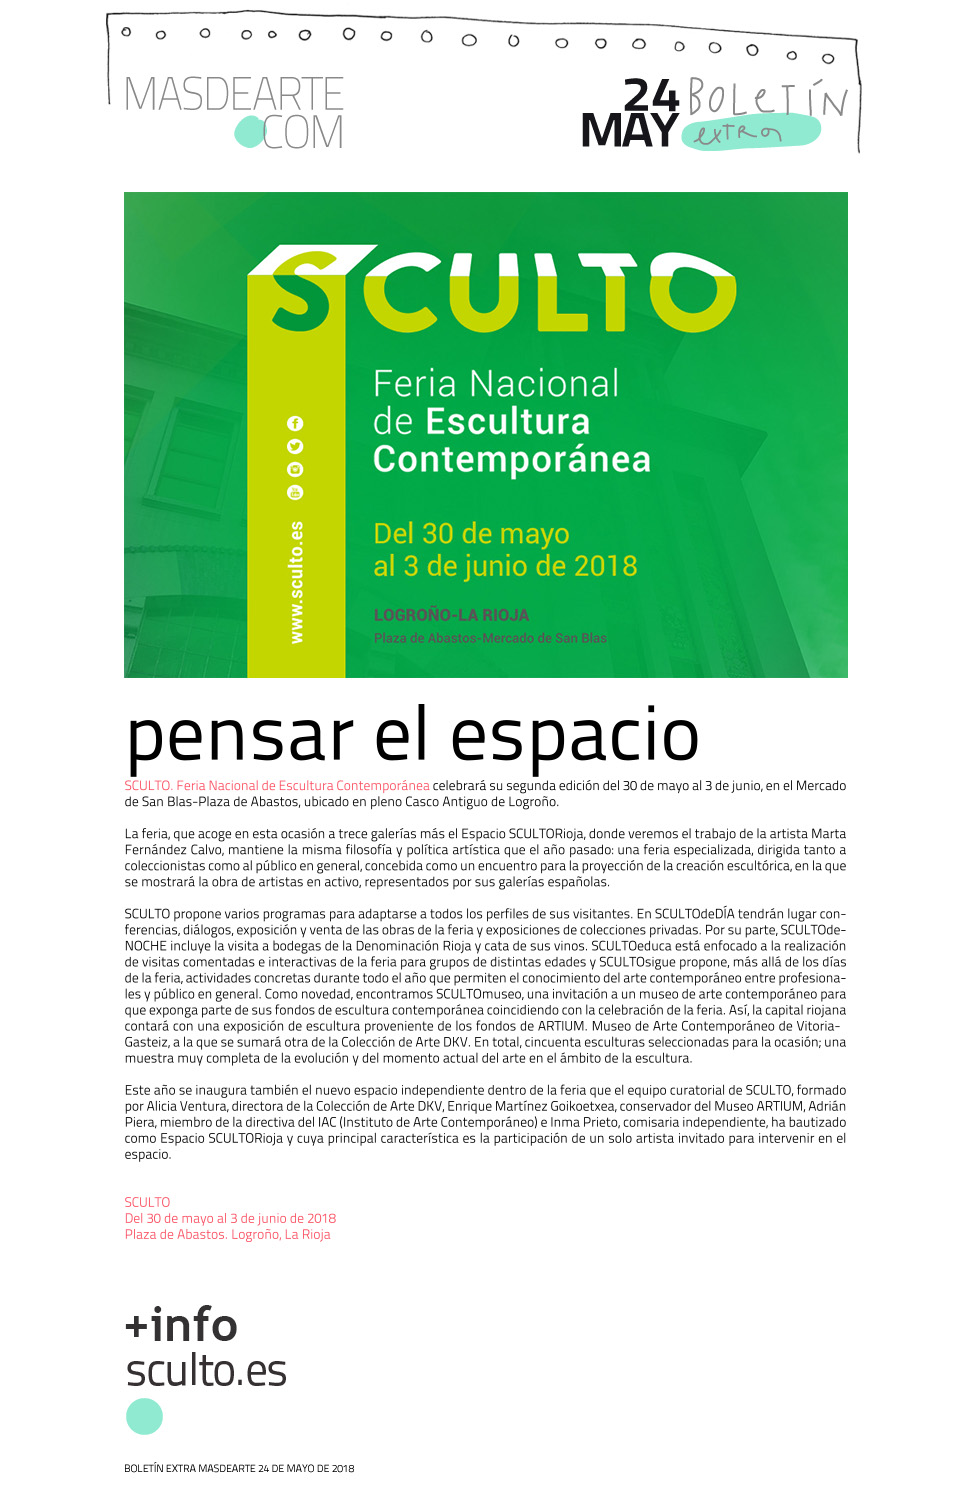 Extra masdearte: SCULTO. Feria Nacional de Escultura Contemporánea, del 30 de mayo al 3 de junio 2018